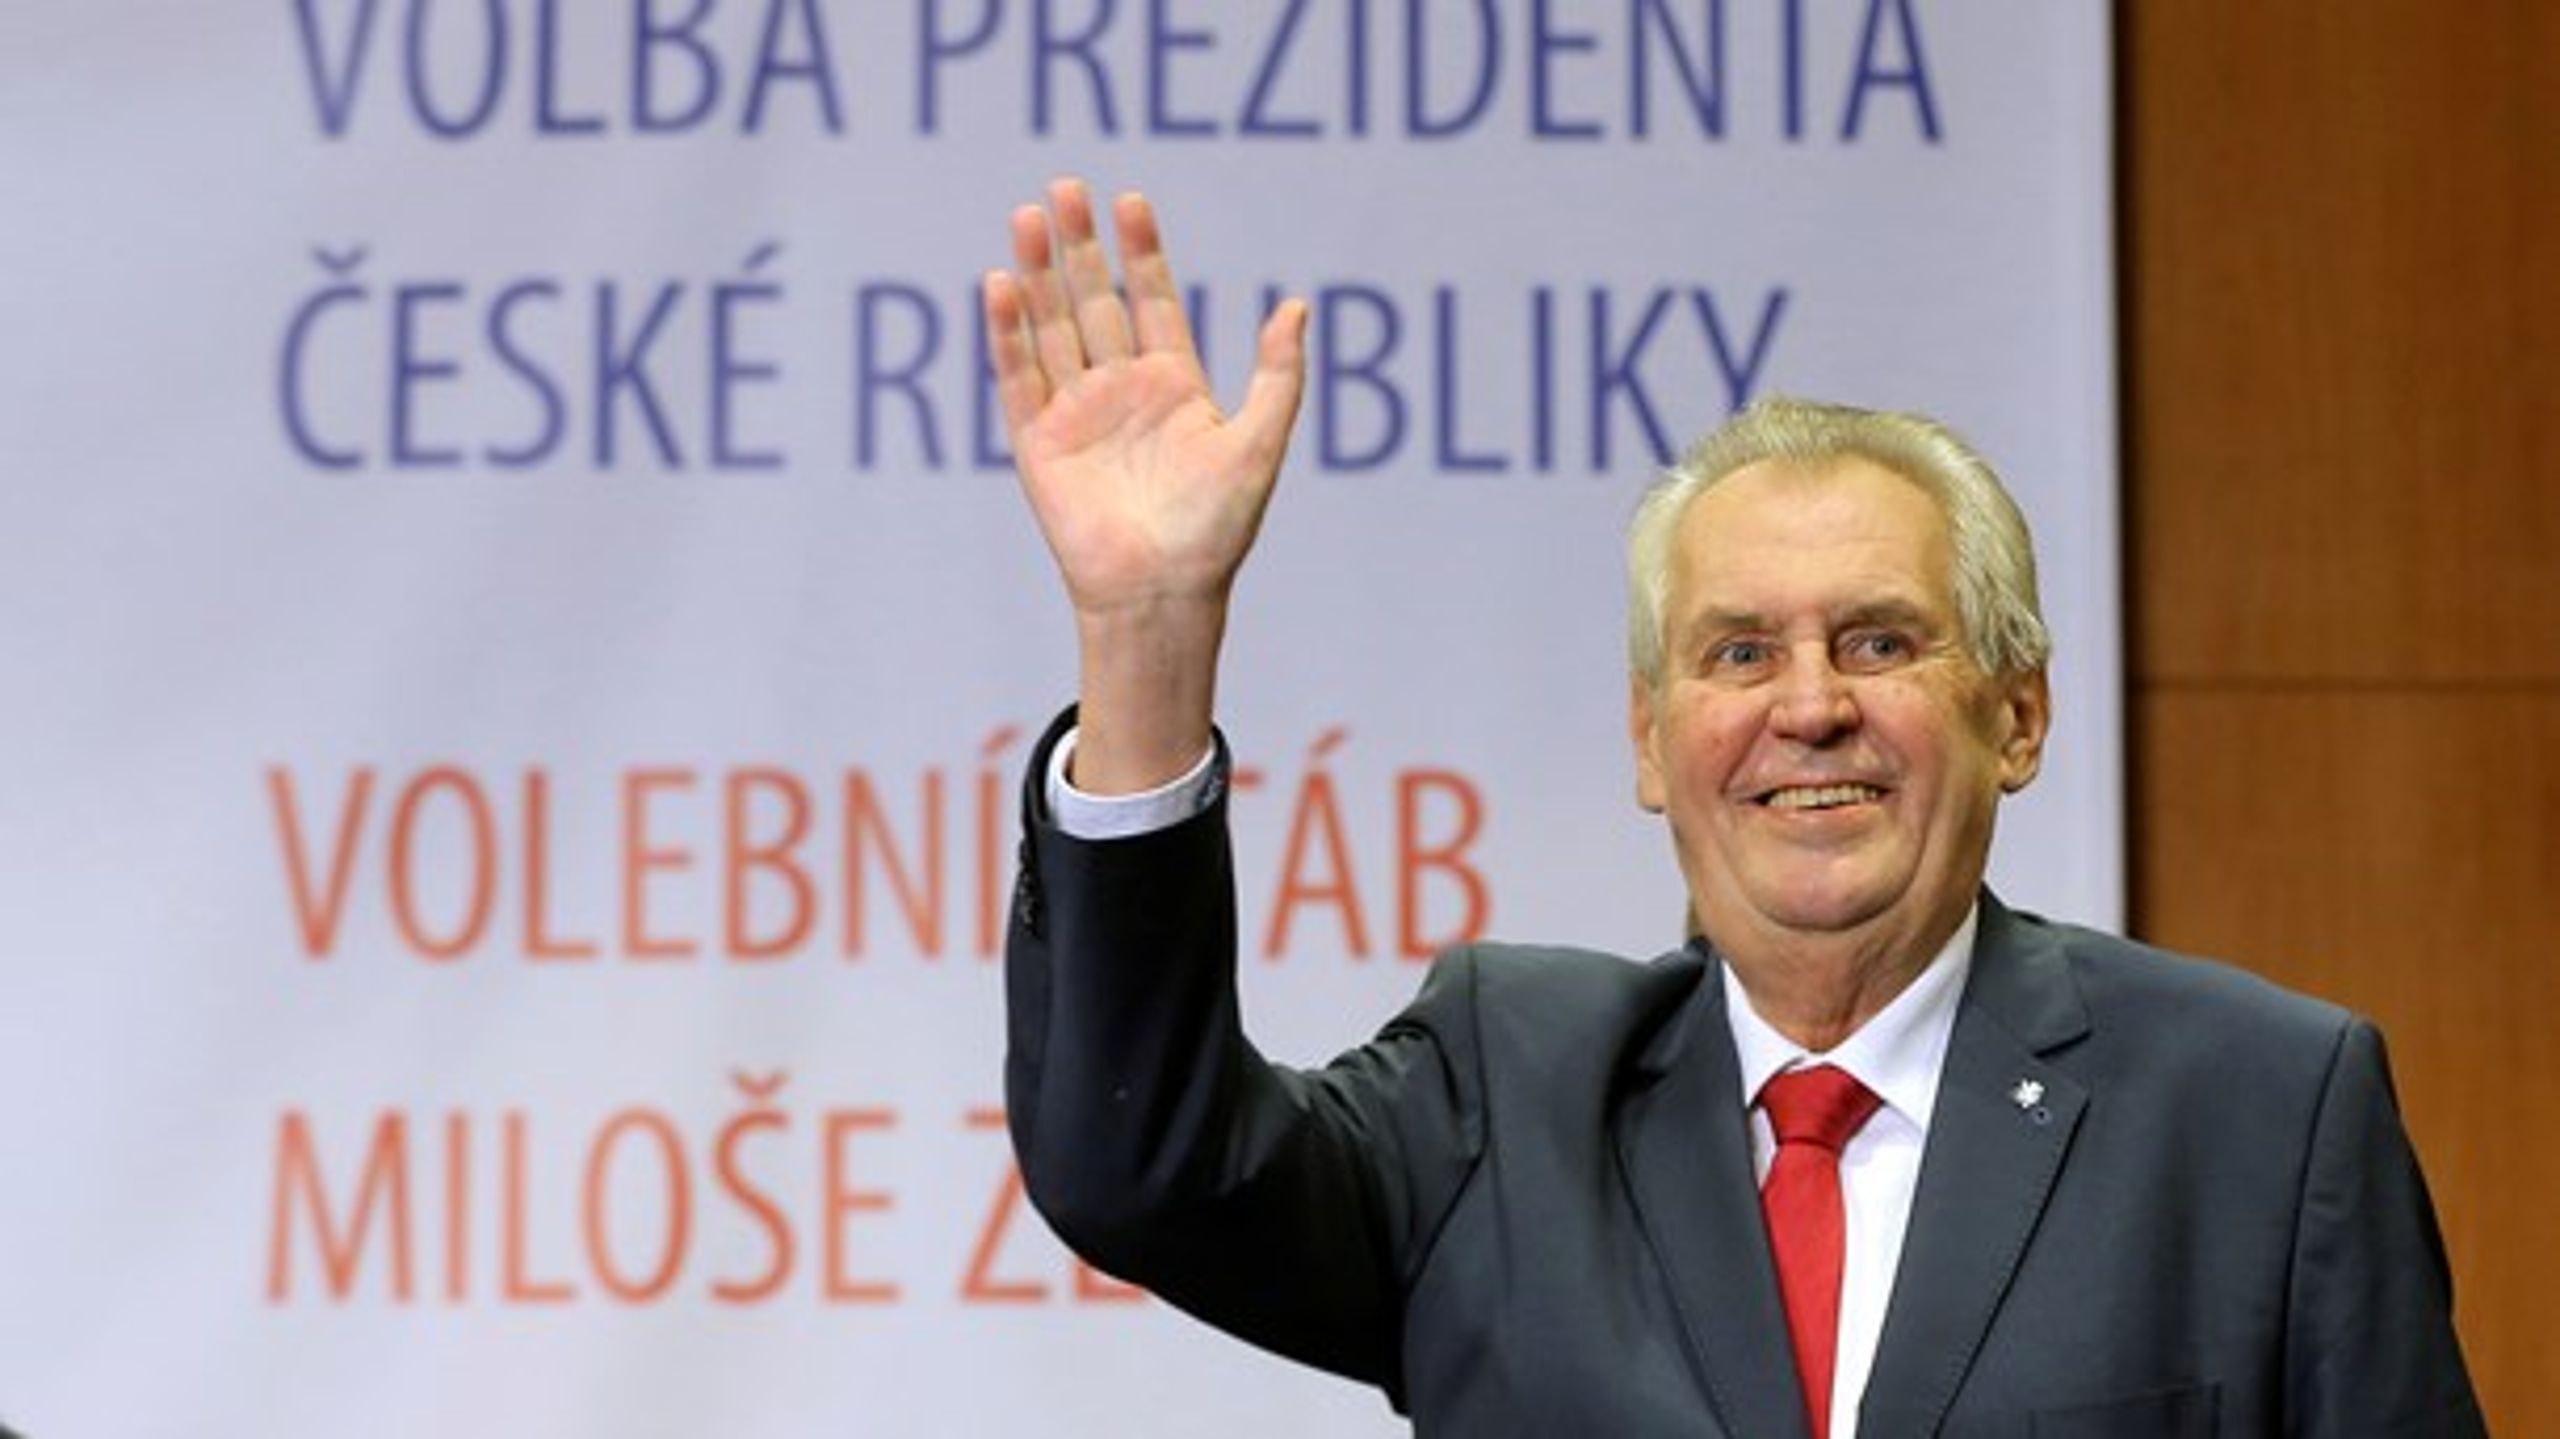 I slutningen af januar afholdt Tjekkiet præsidentvalg, hvor&nbsp;det lykkedes den siddende præsident, Milos Zeman, at blive genvalgt.